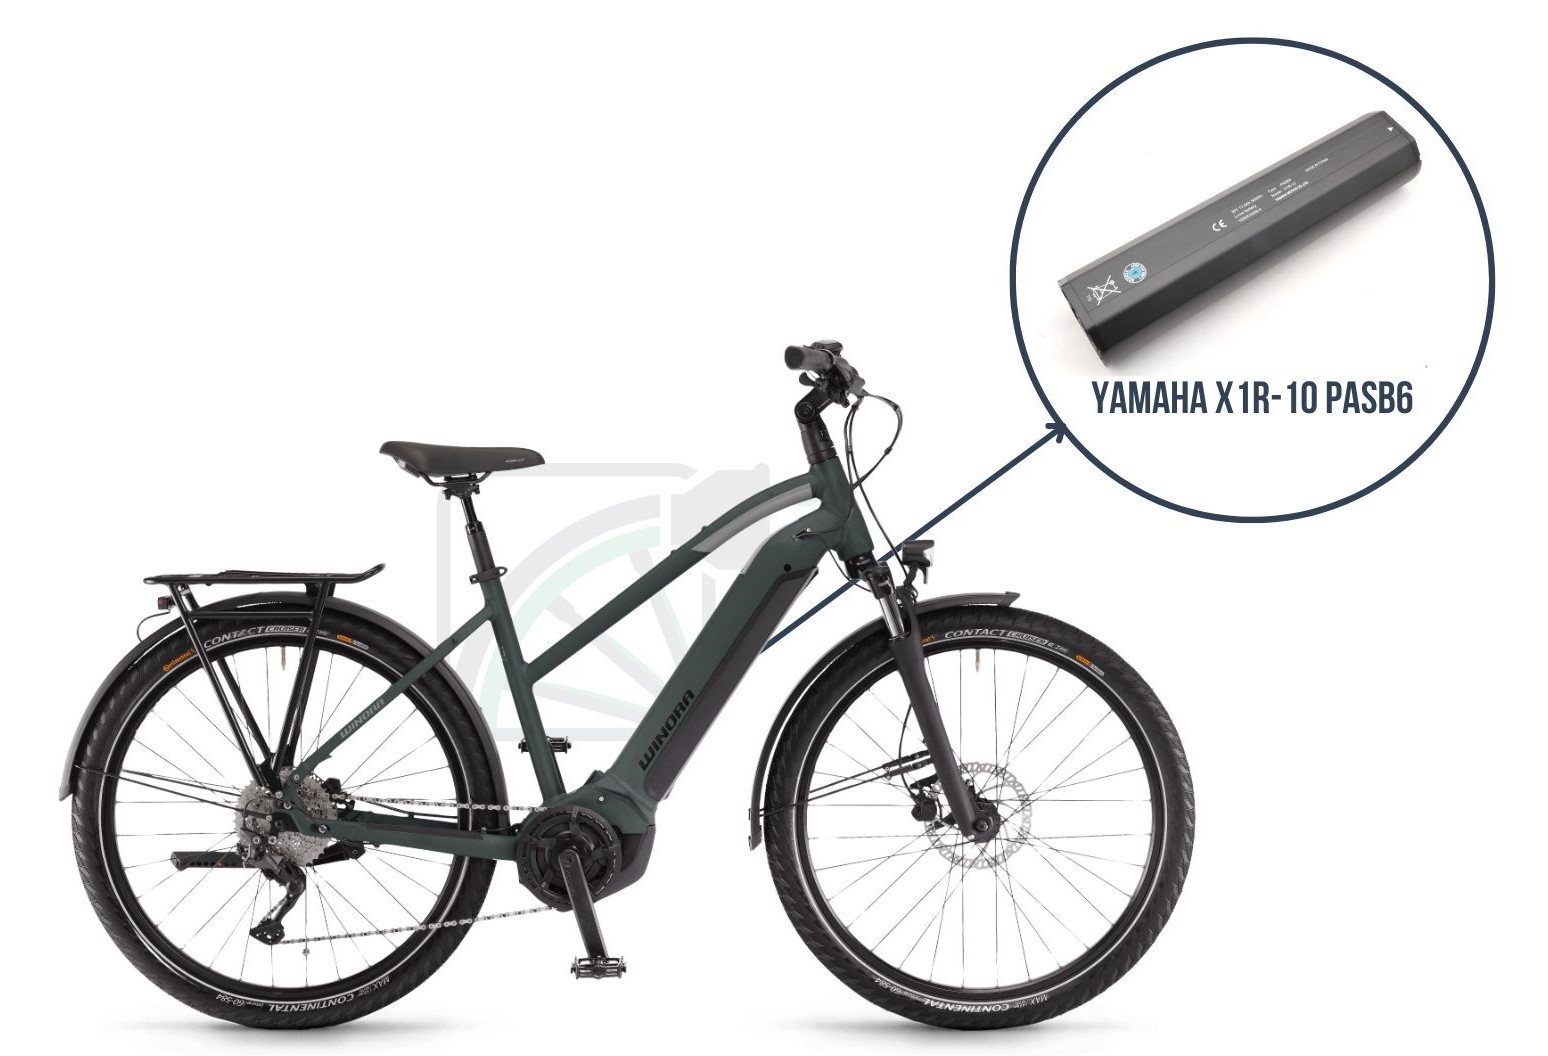 De Winor Yucatan iN7f met daarbij uitgelicht welke accu deze fiets gebruikt. Dit is namelijk de Yamaha X1R-10 PASB6